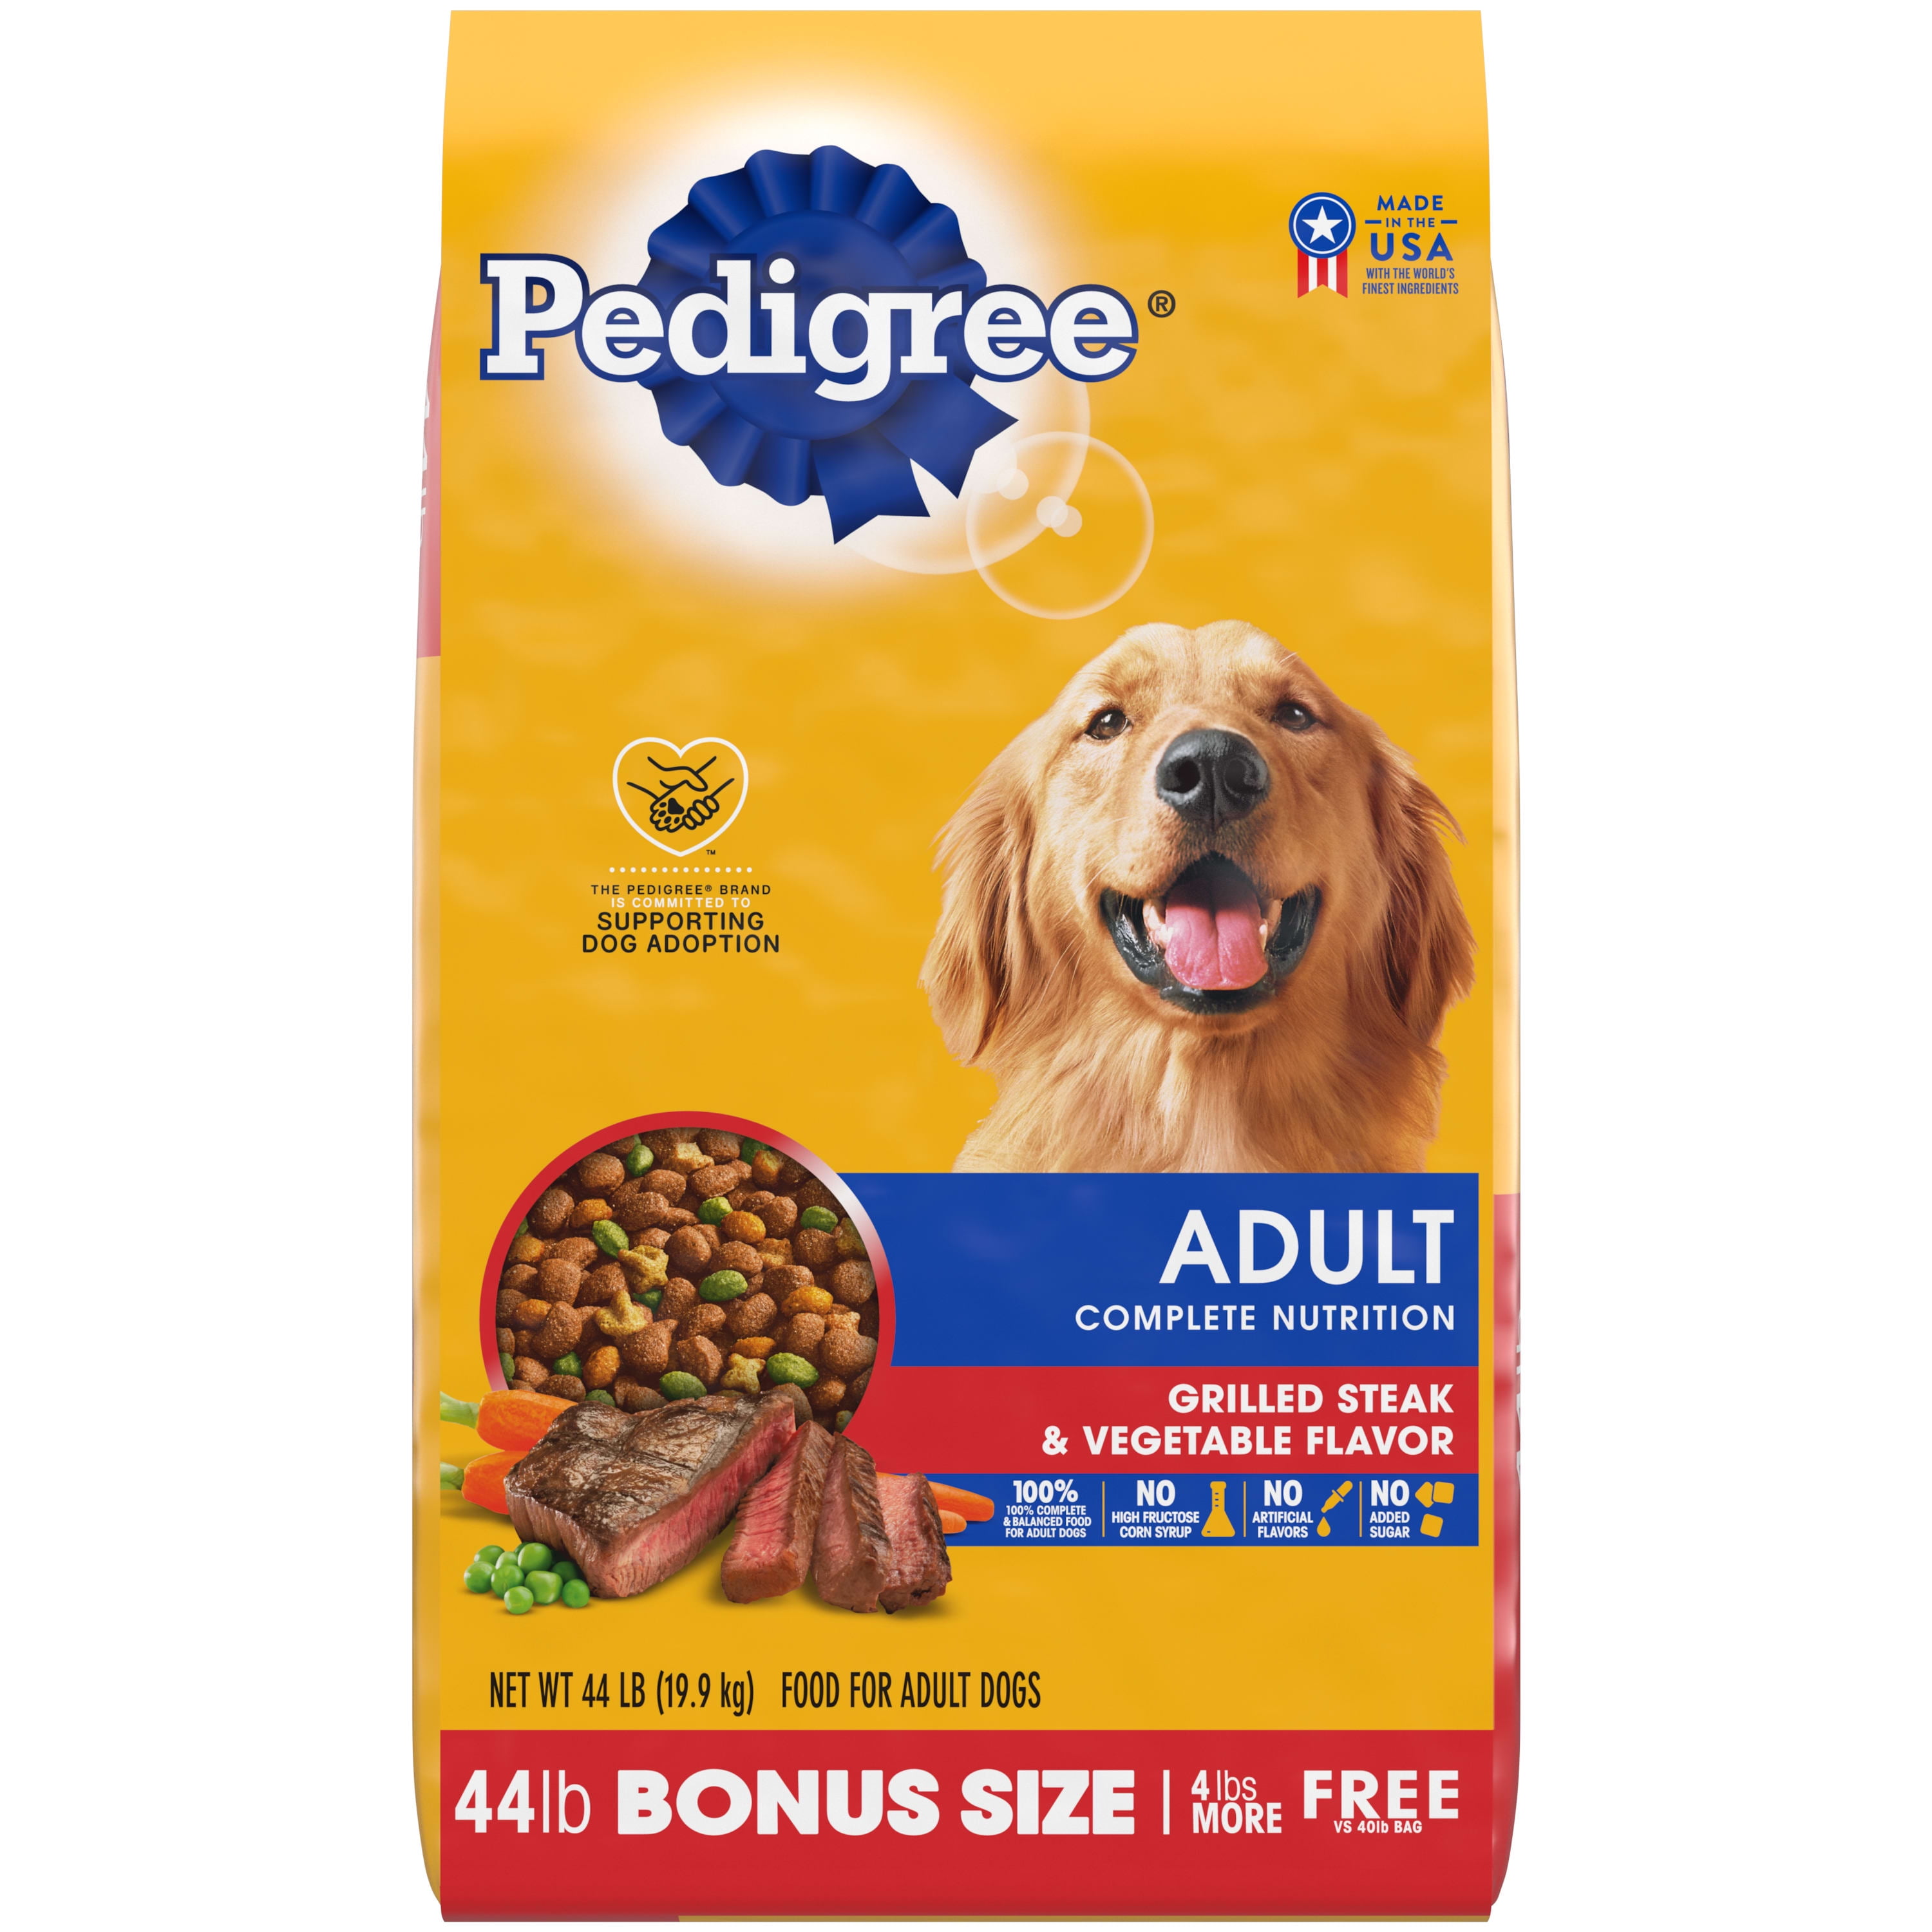 Pedigree Complete Nutrition Grilled Steak & Vegetable Flavor Dry Dog Food for Adult Dog, 44 lb. Bag